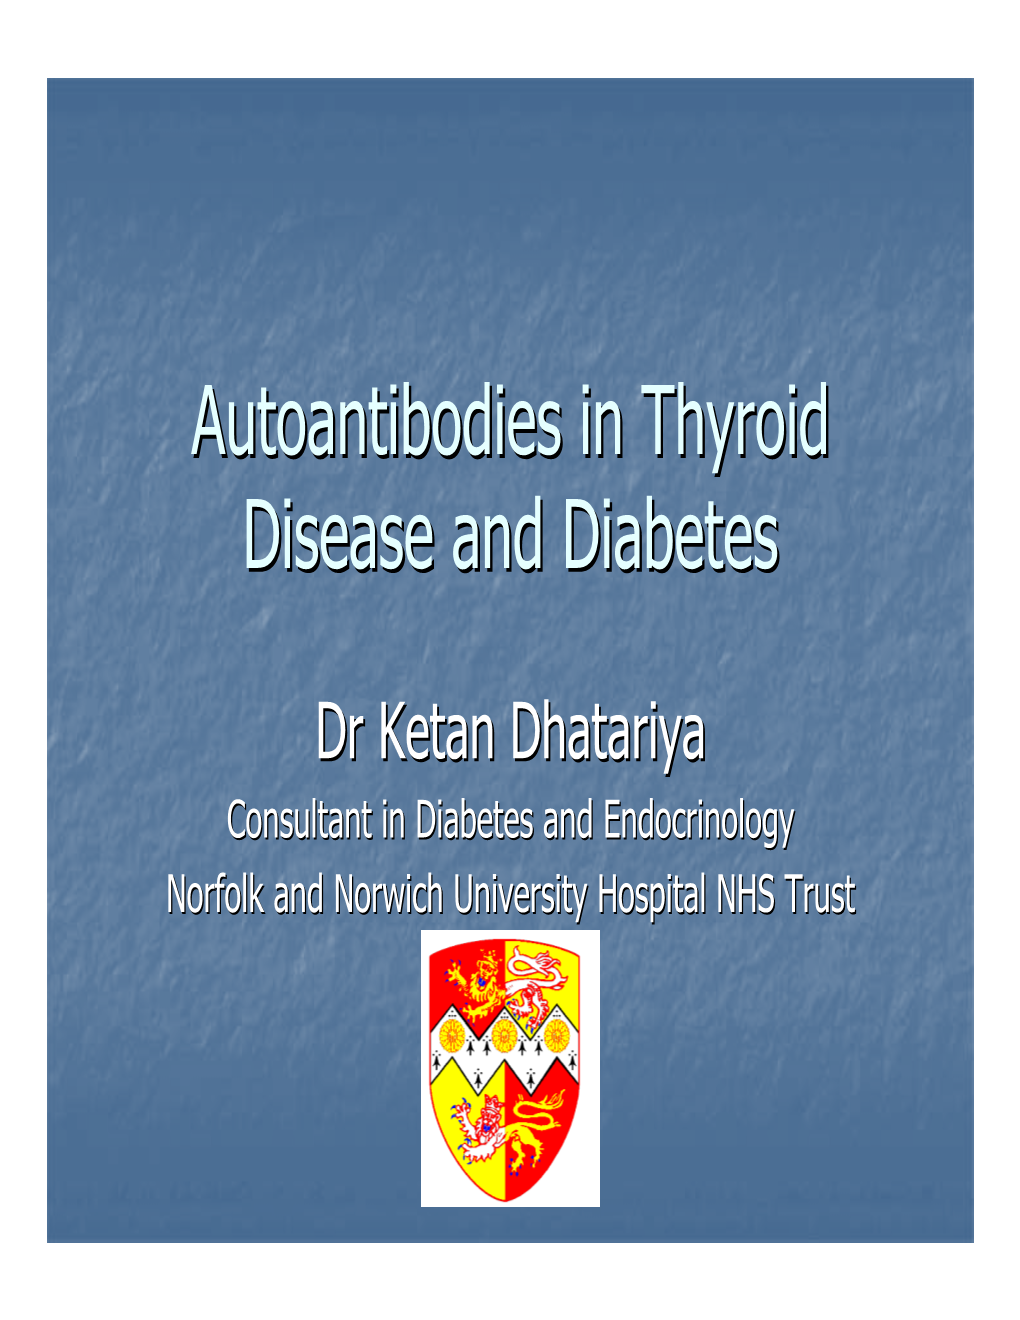 Autoantibodies in Thyroid Disease and Diabetes